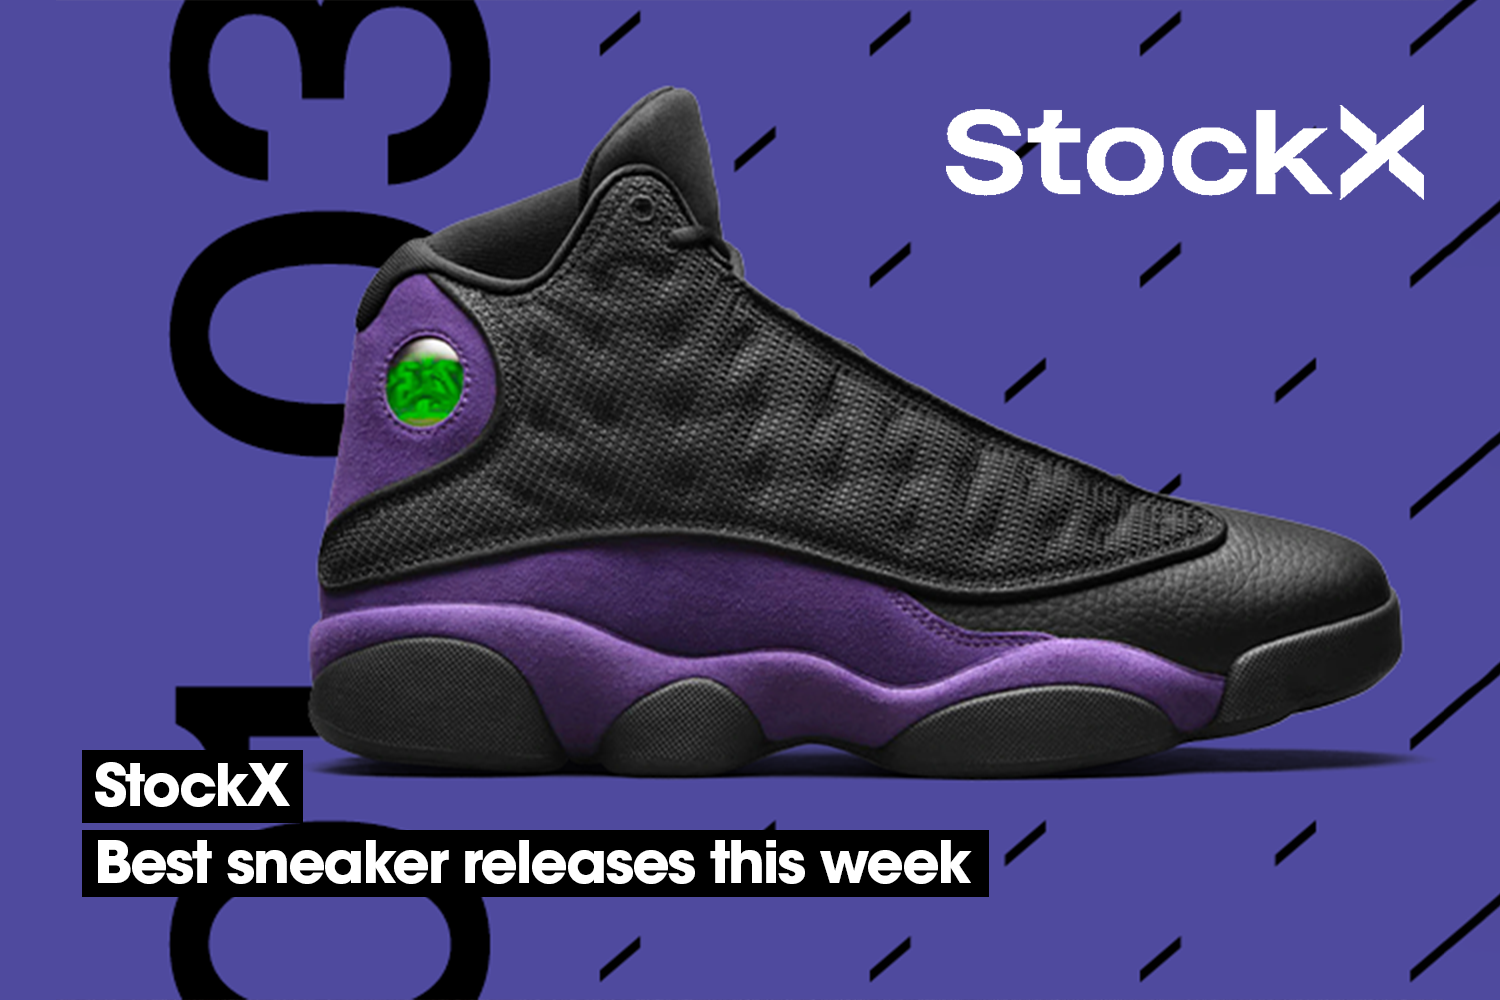 De beste sneaker releases van StockX van deze week